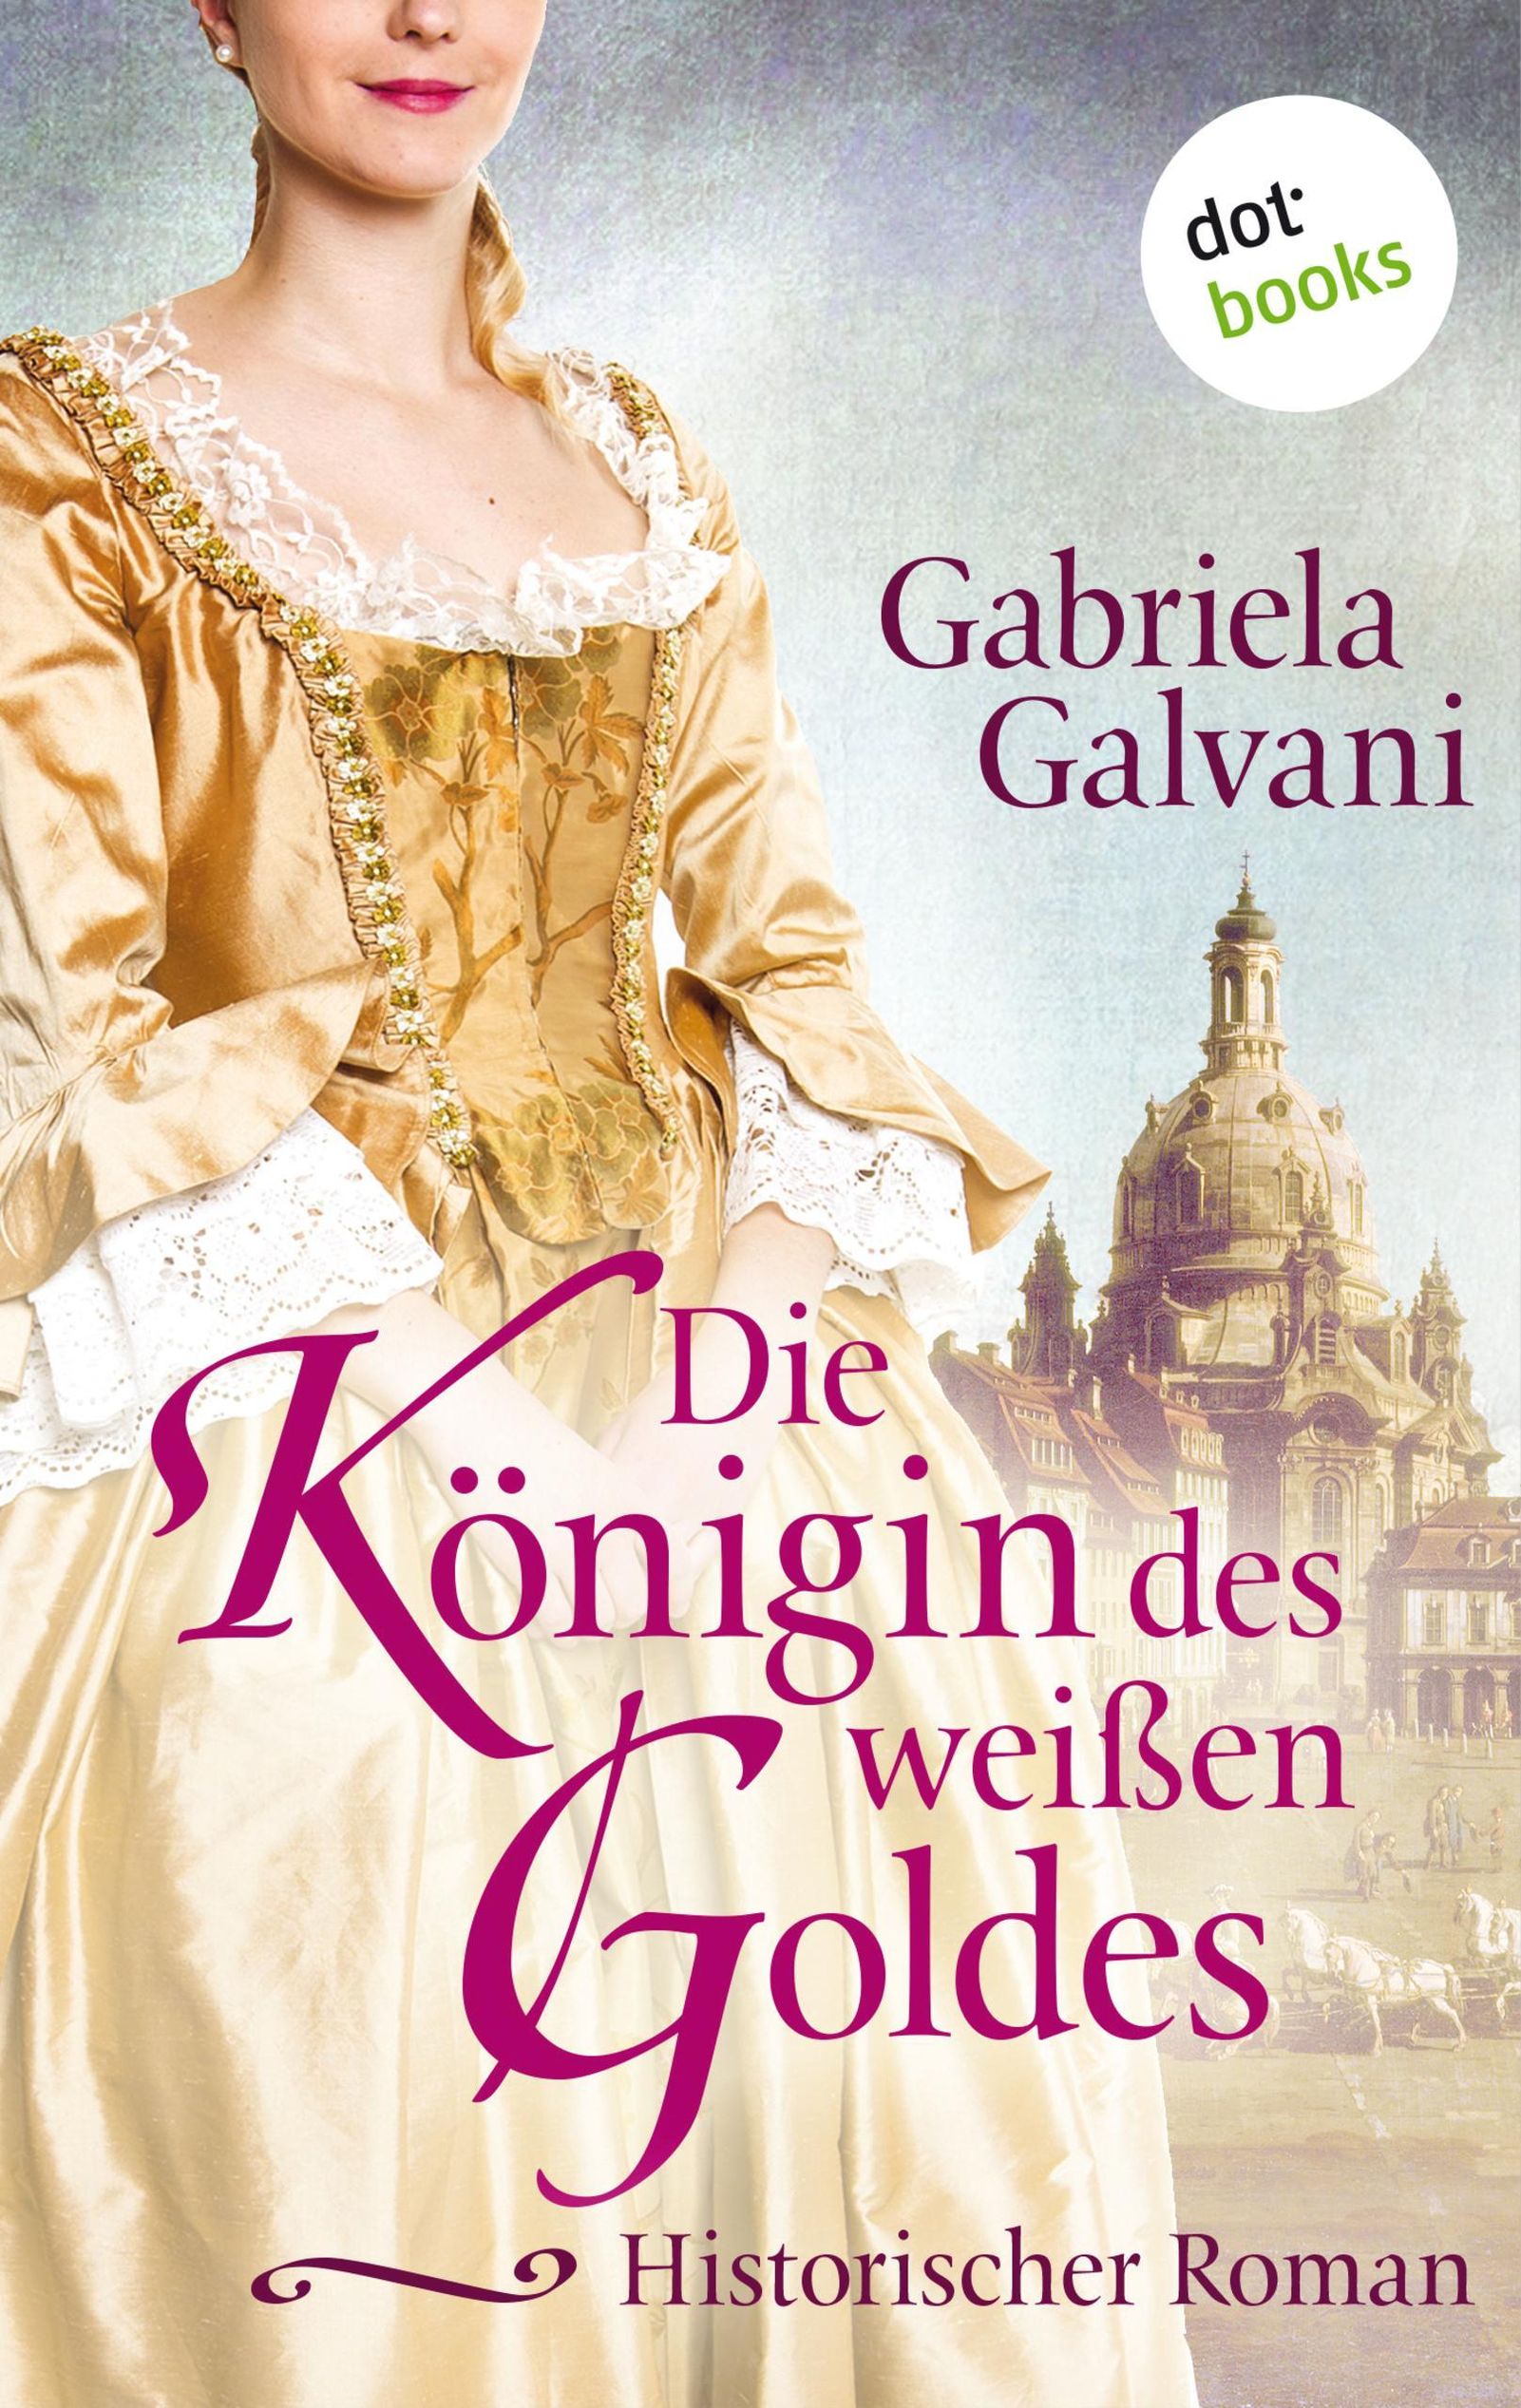 Die Königin des weissen Goldes eBook v. Gabriela Galvani | Weltbild